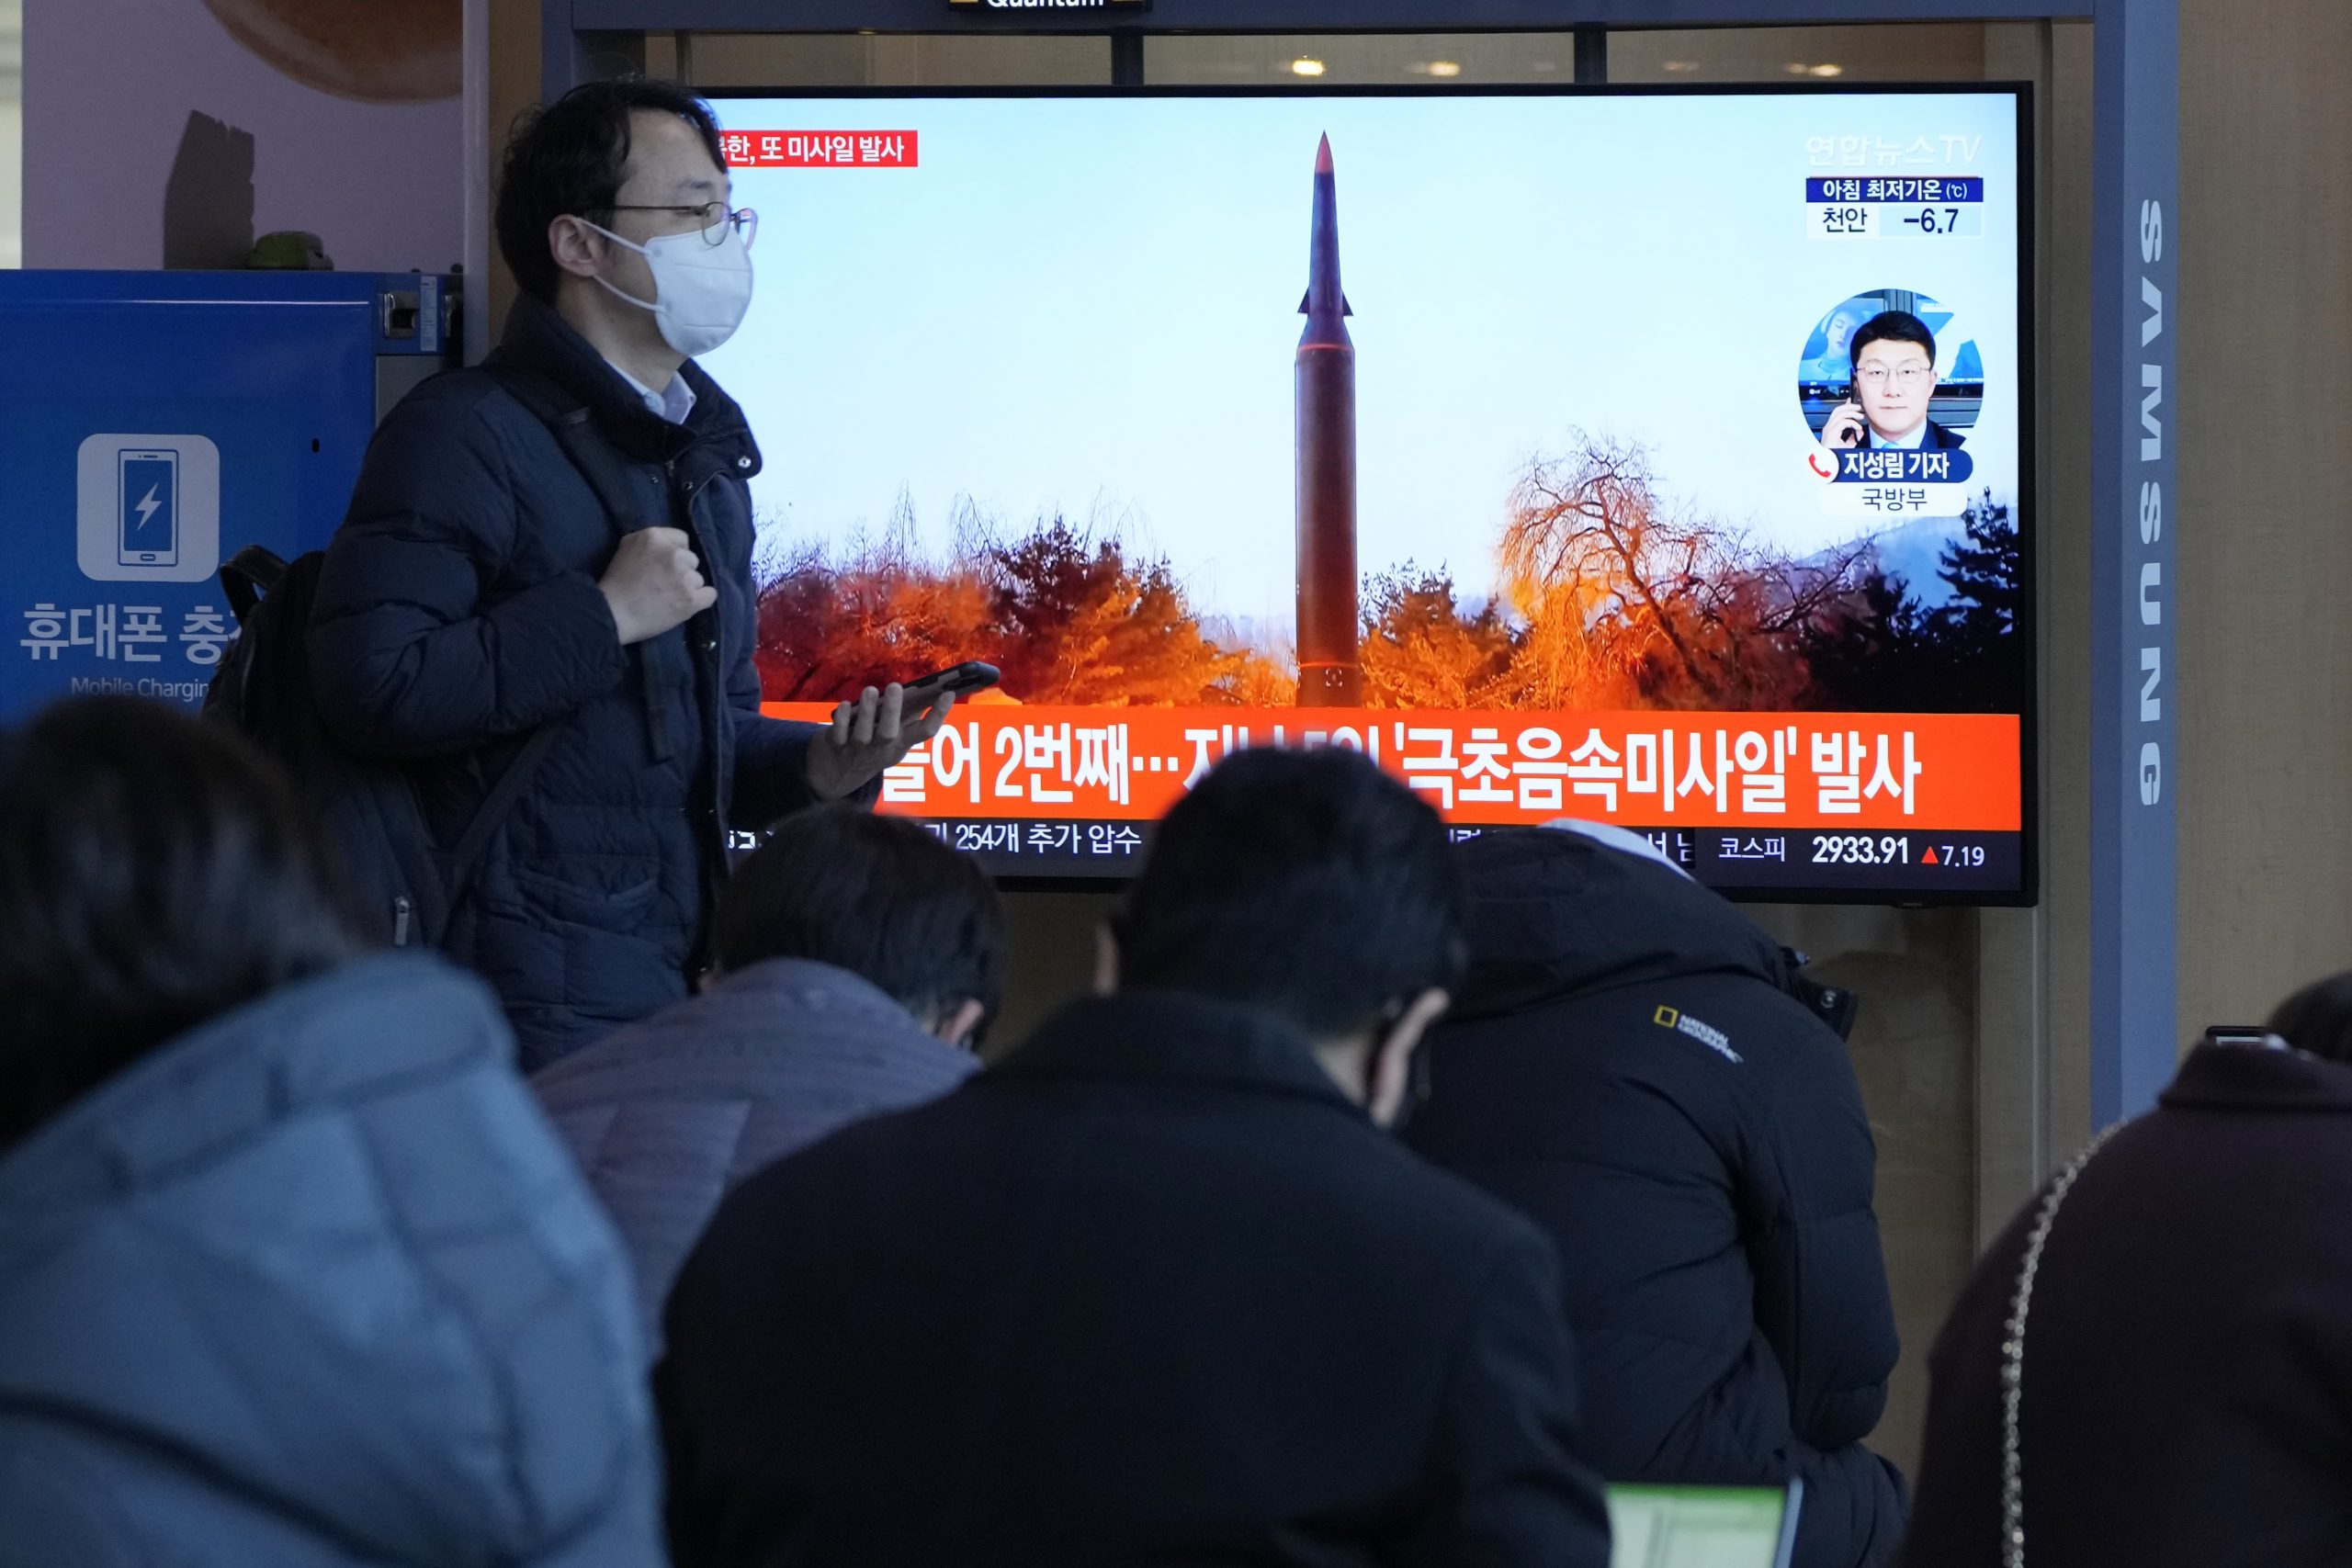 美谴责朝鲜再射飞弹威胁国际社会